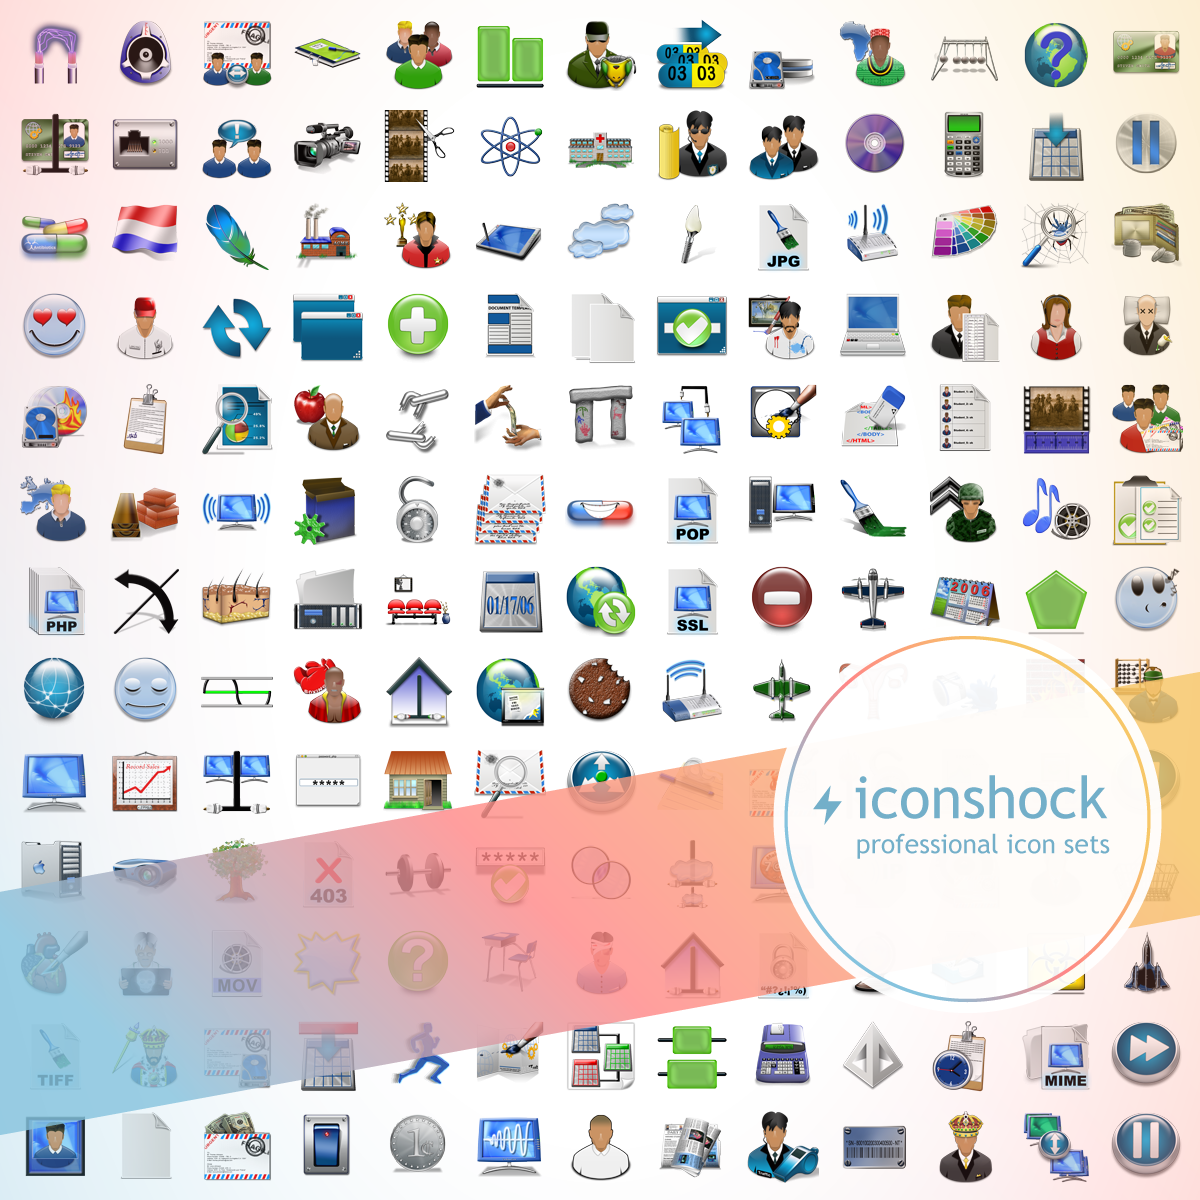 X-Mac Icons - Iconshock